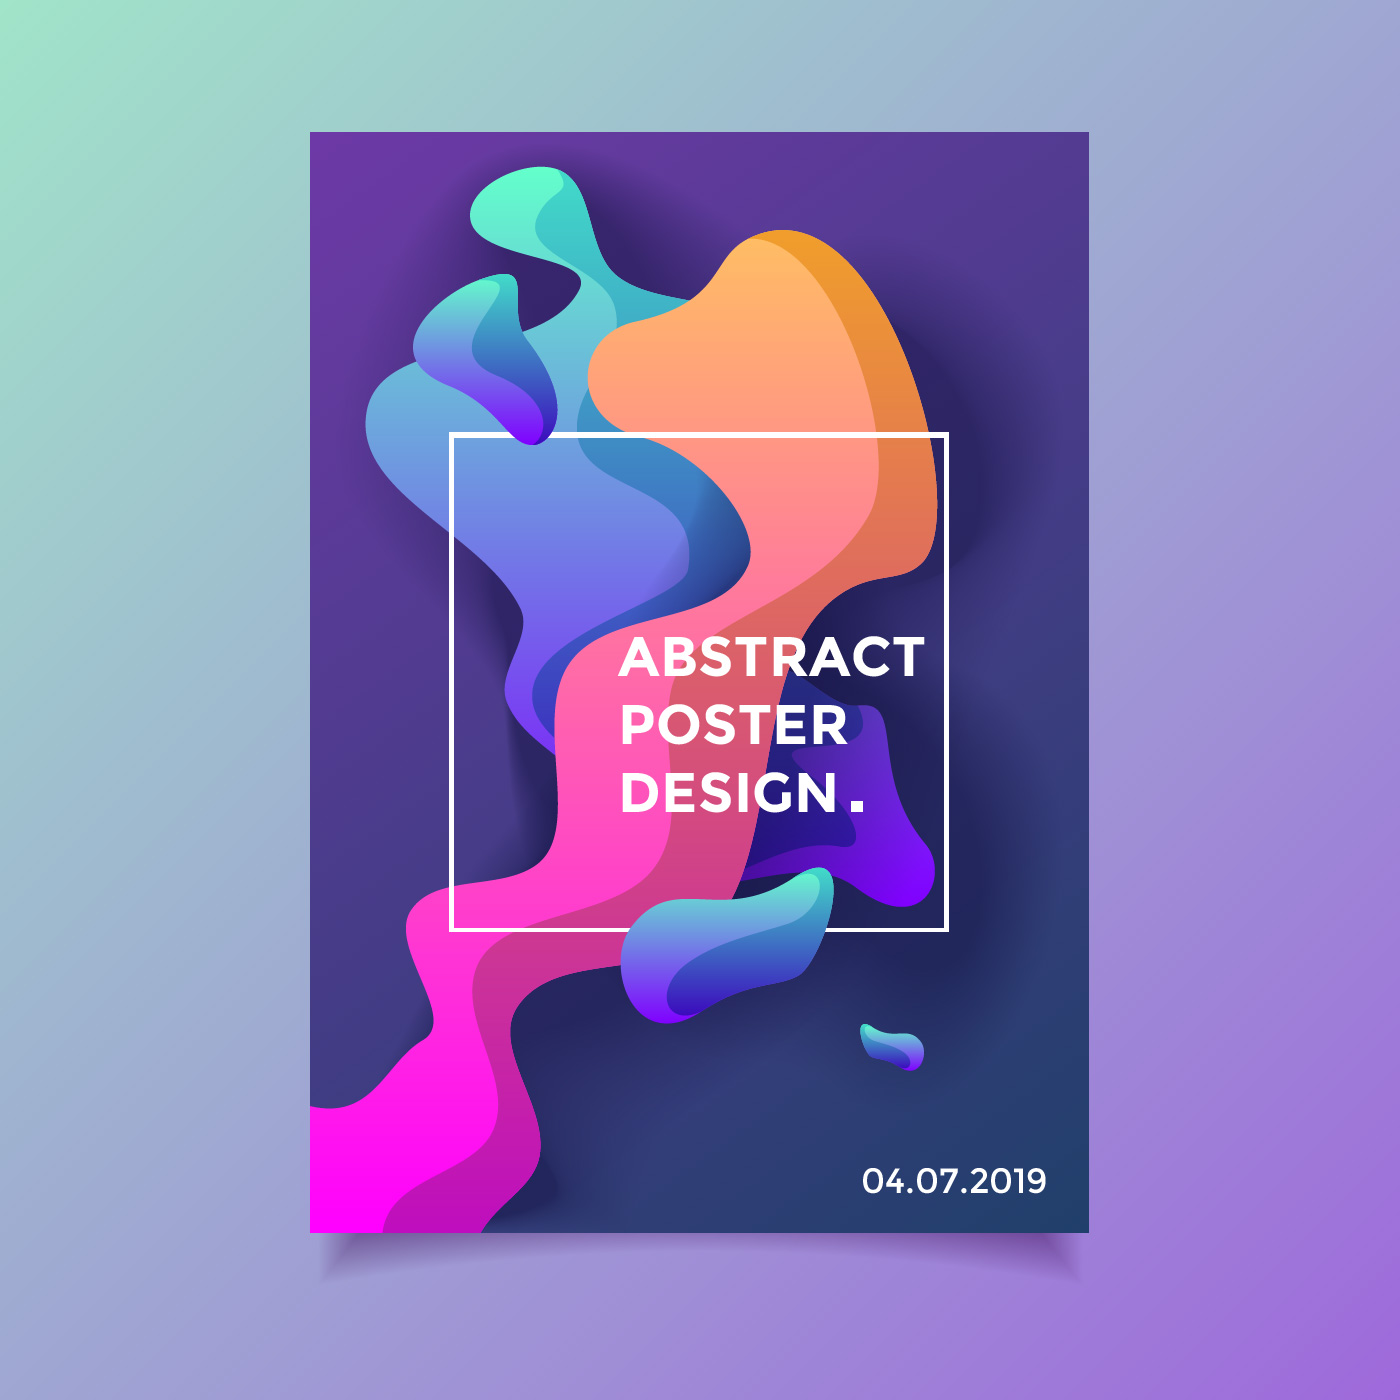 Liquid Abstract Poster Design Download Free Vectors Clipart Graphics Vector Art,Medical Tattoos Designs